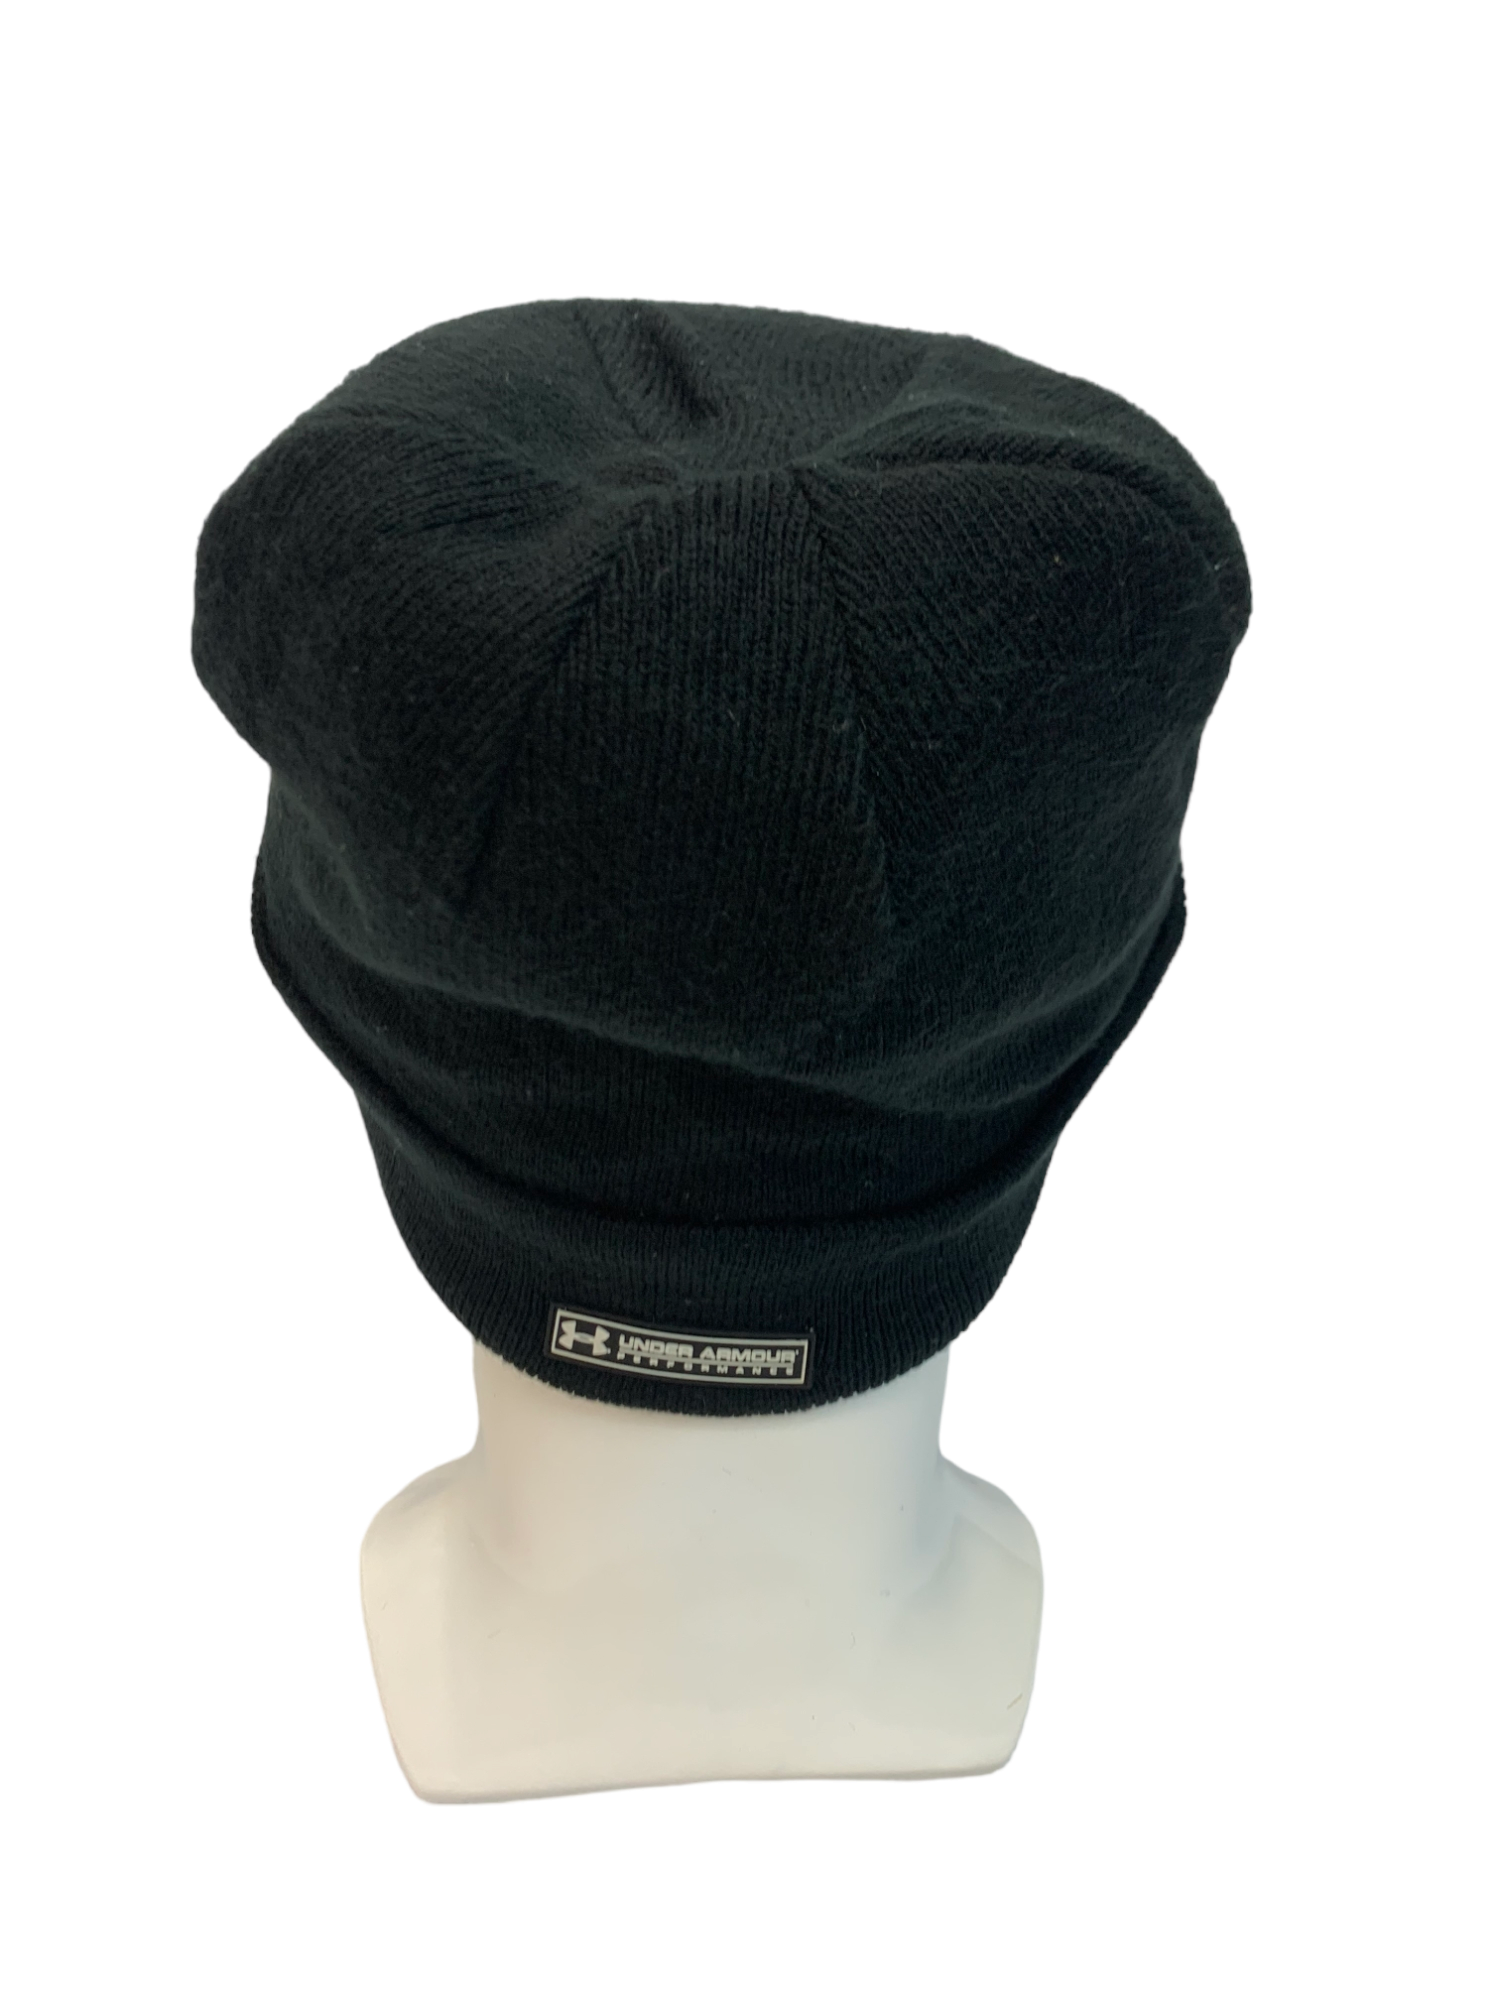 Streetwear - UNDER ARMOUR STREETWEAR UNISEX BEANIE HAT CAP - 3